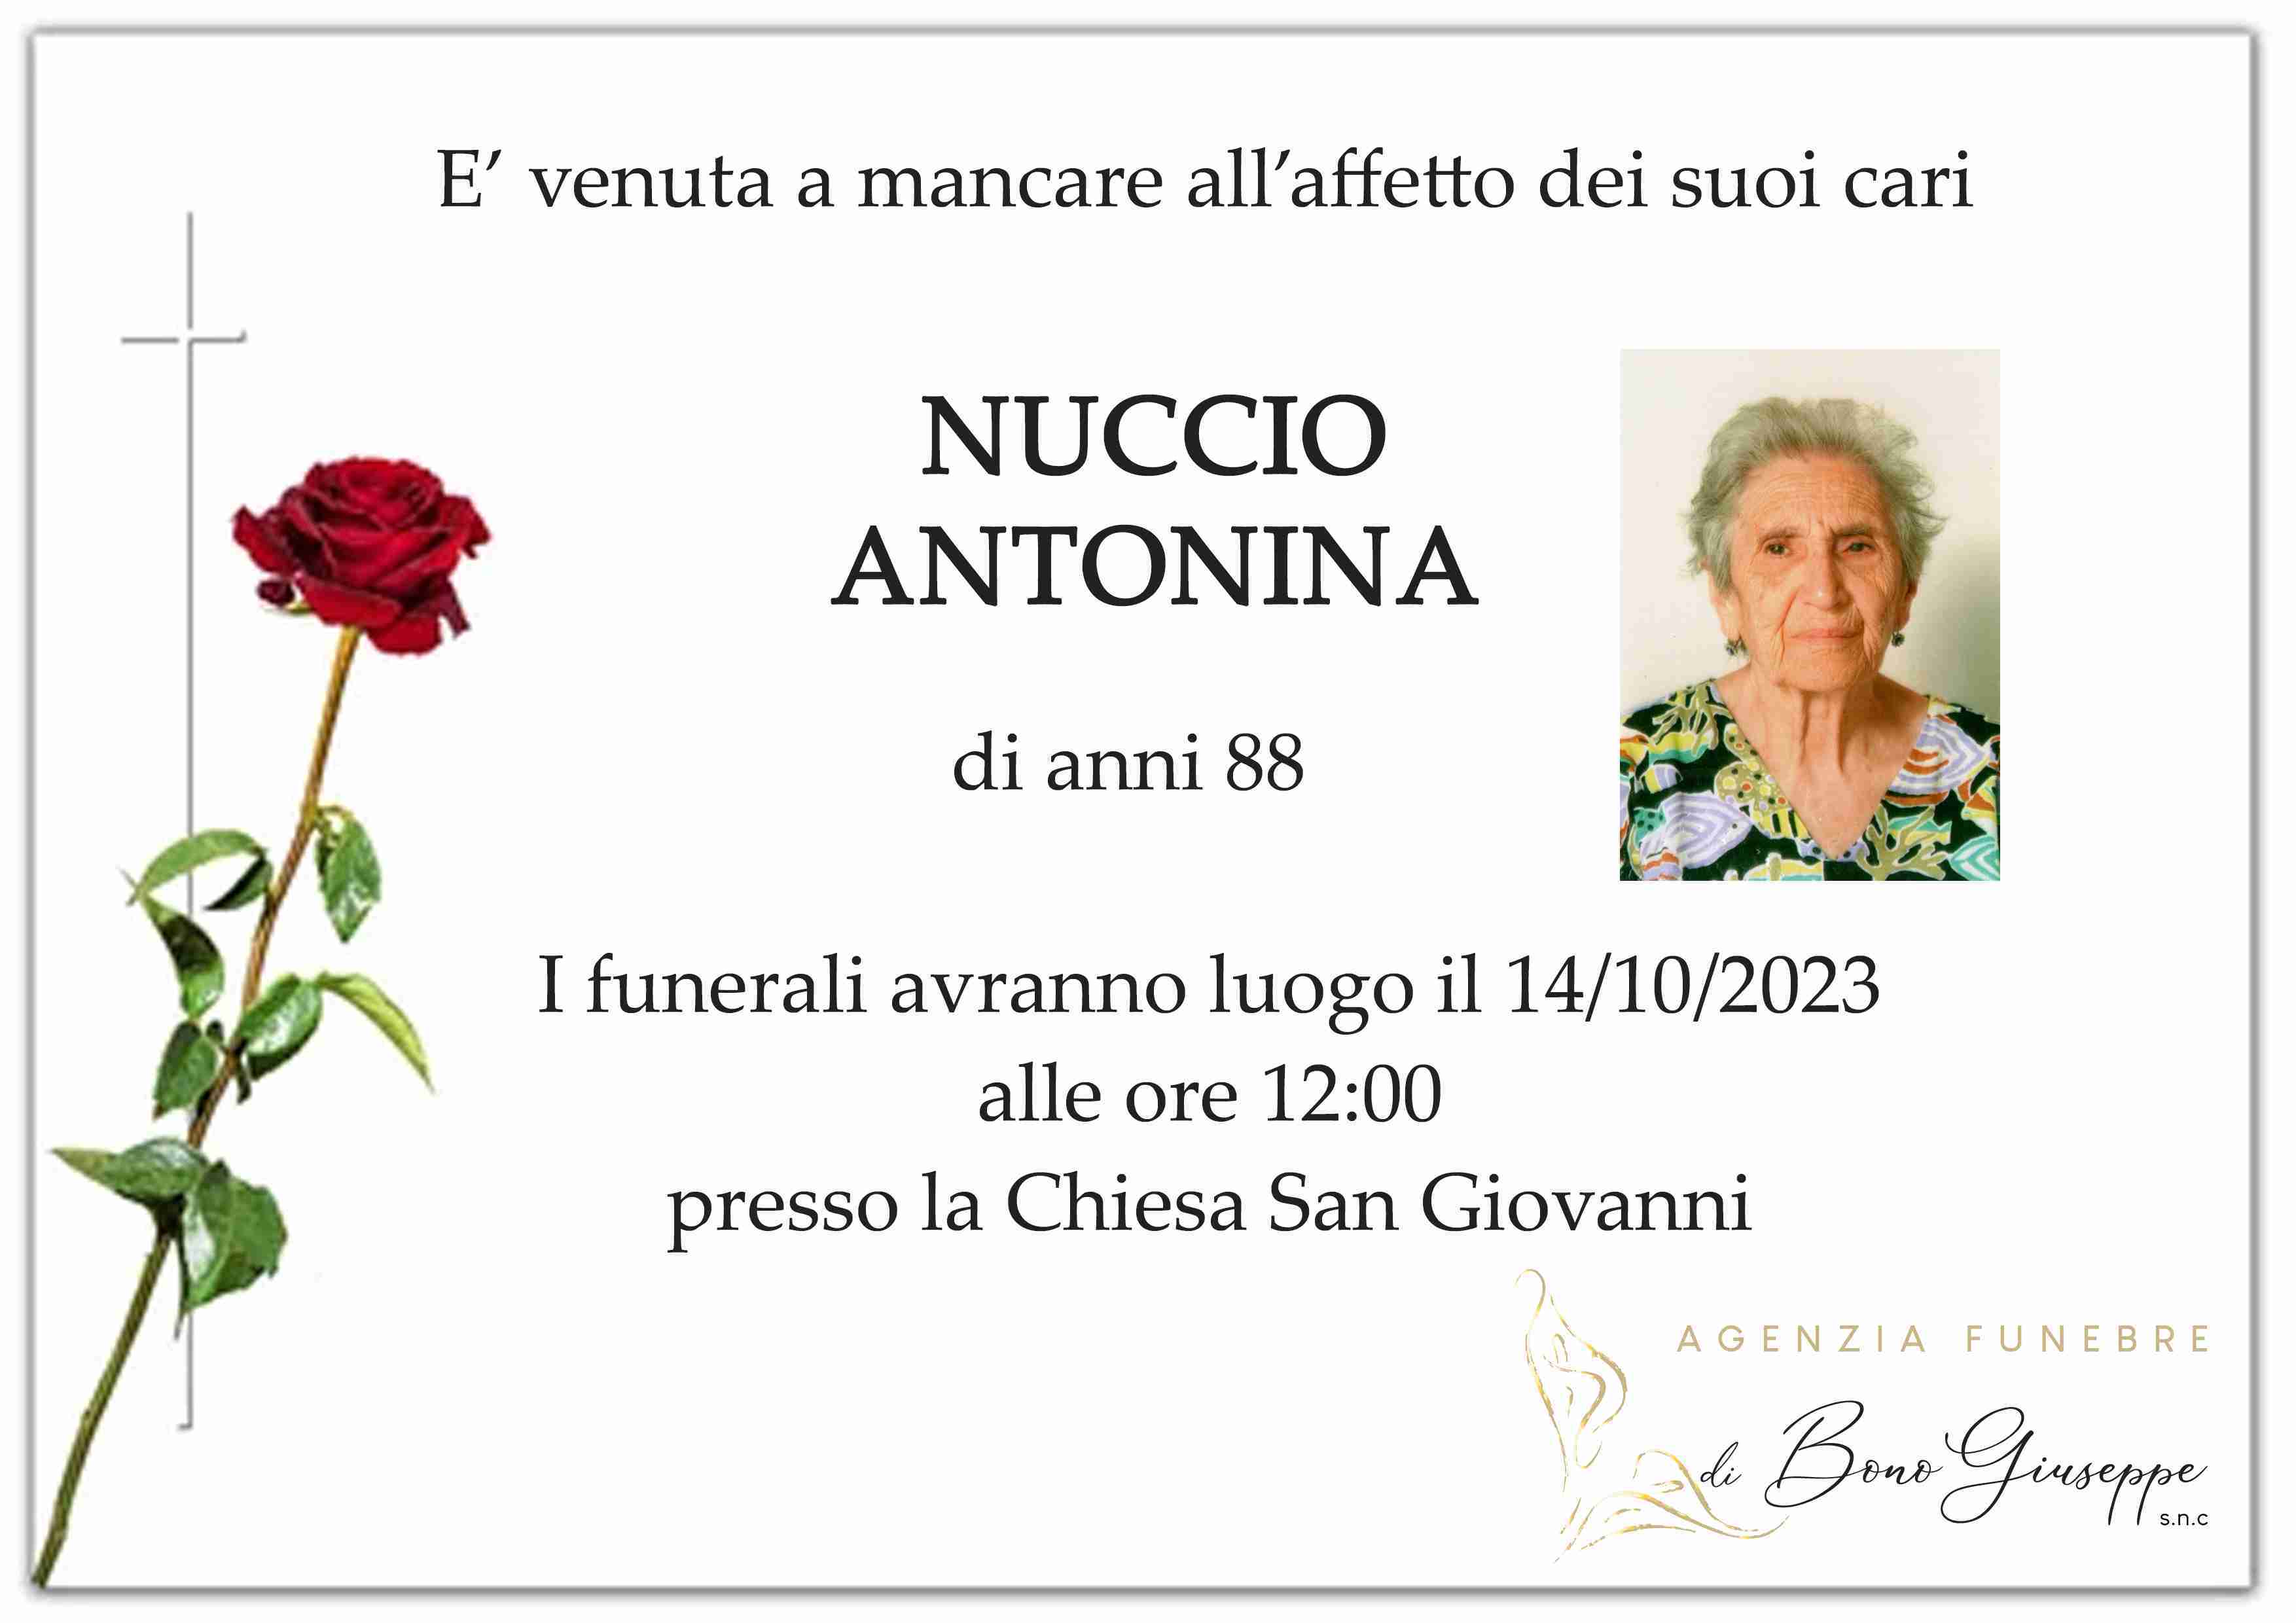 Antonina Nuccio